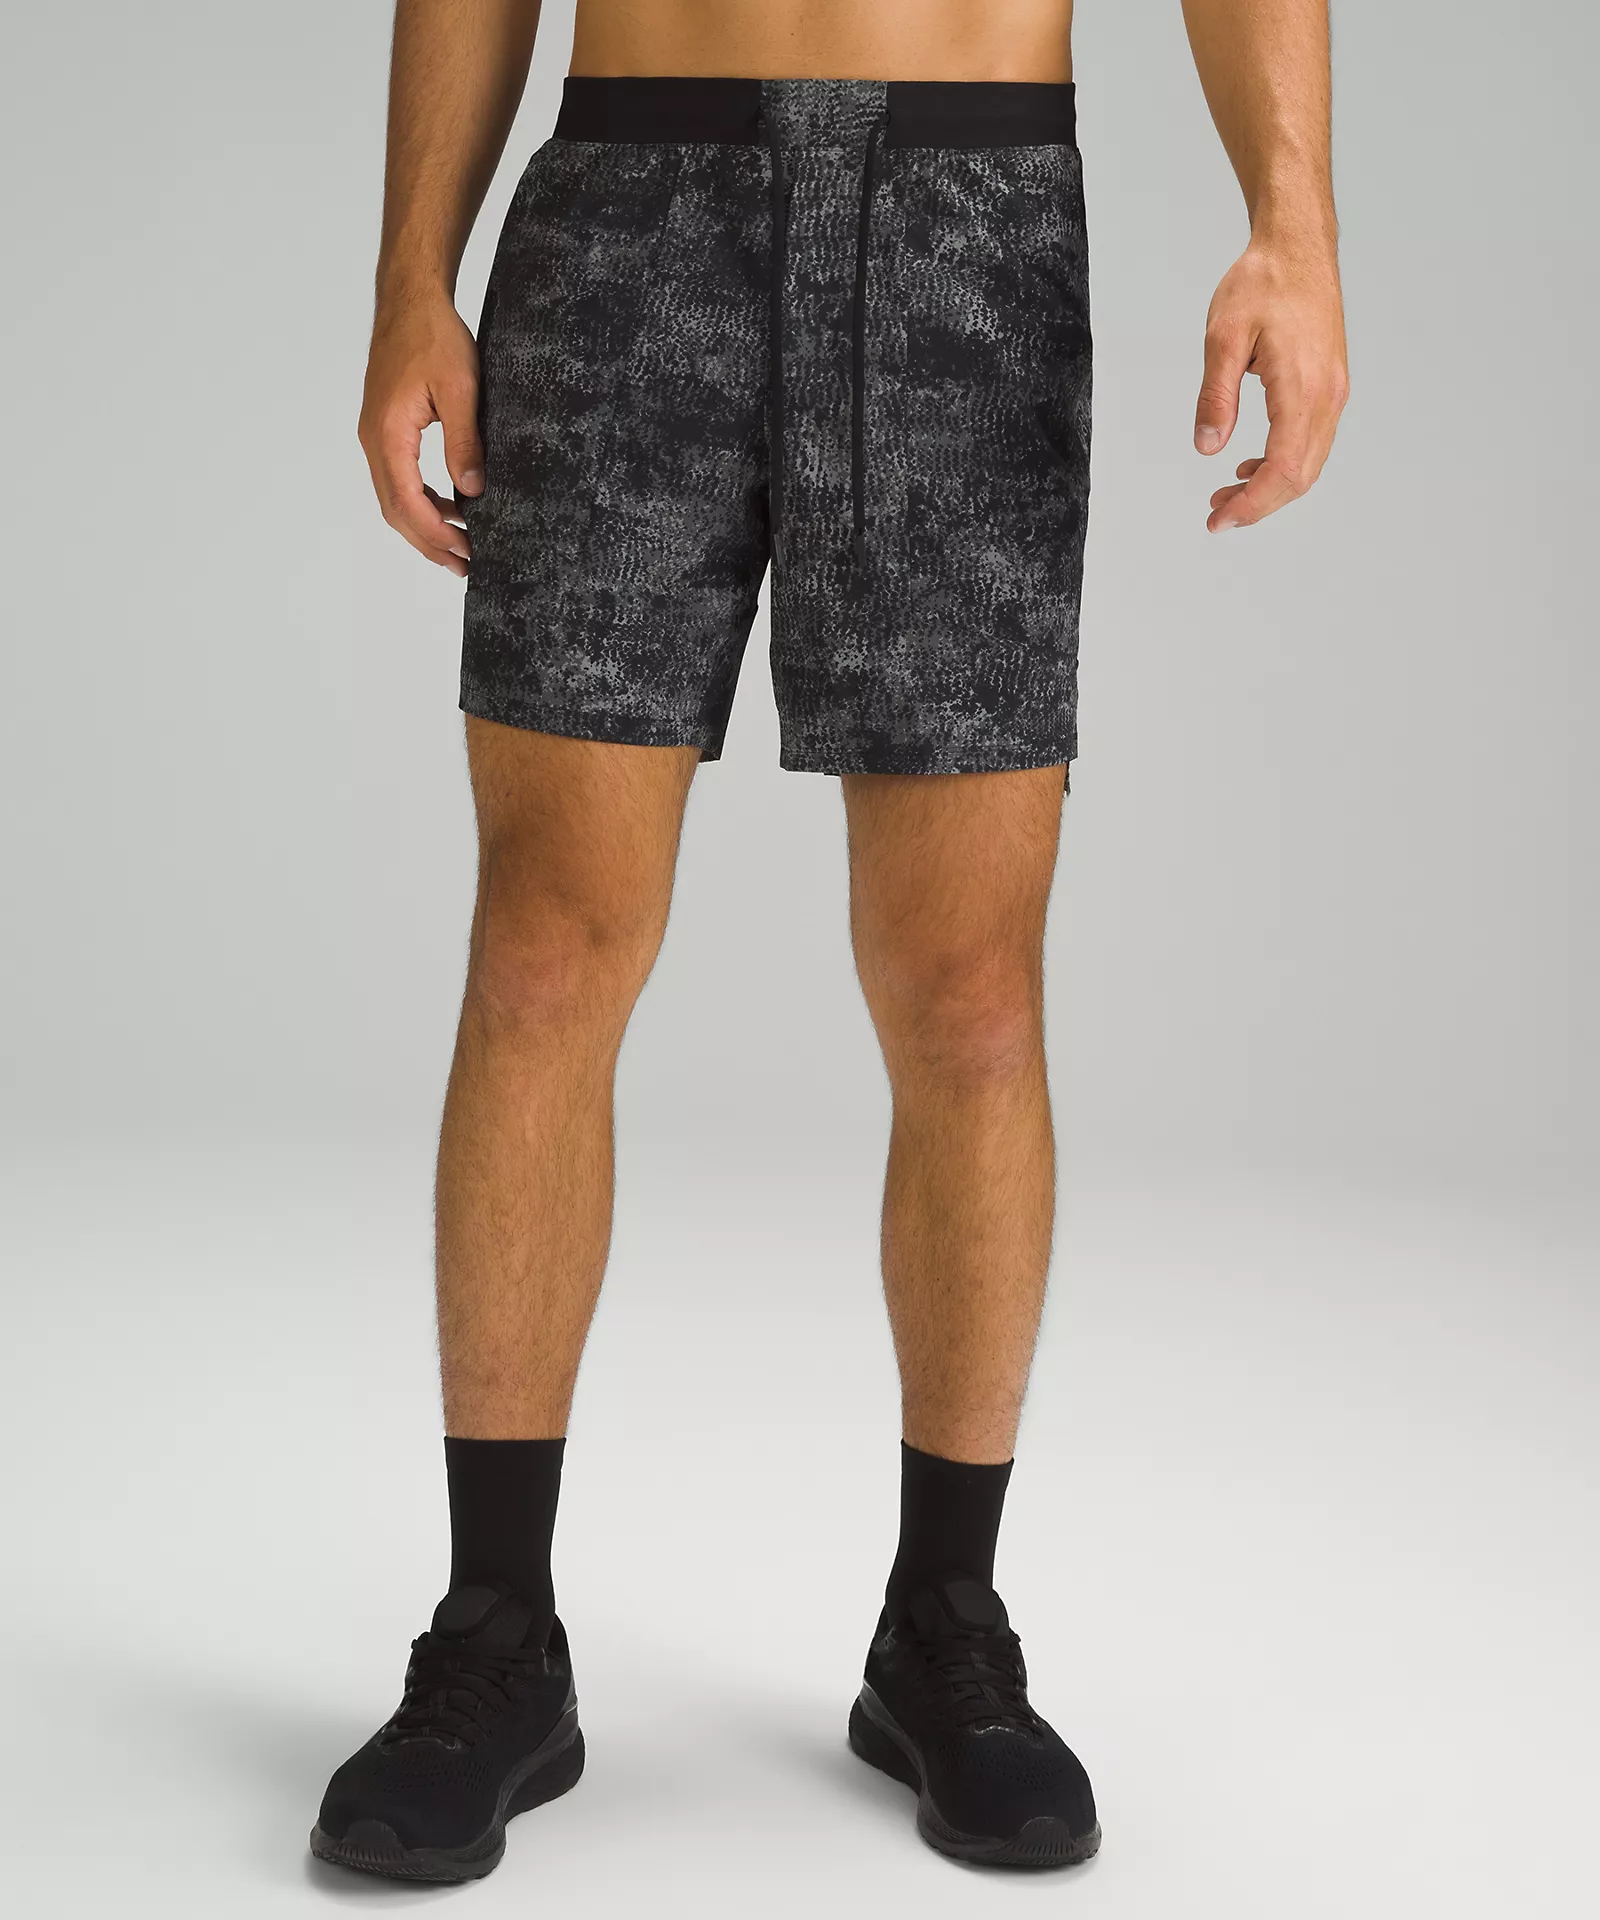 Built in liner or compression shorts? : r/lululemon